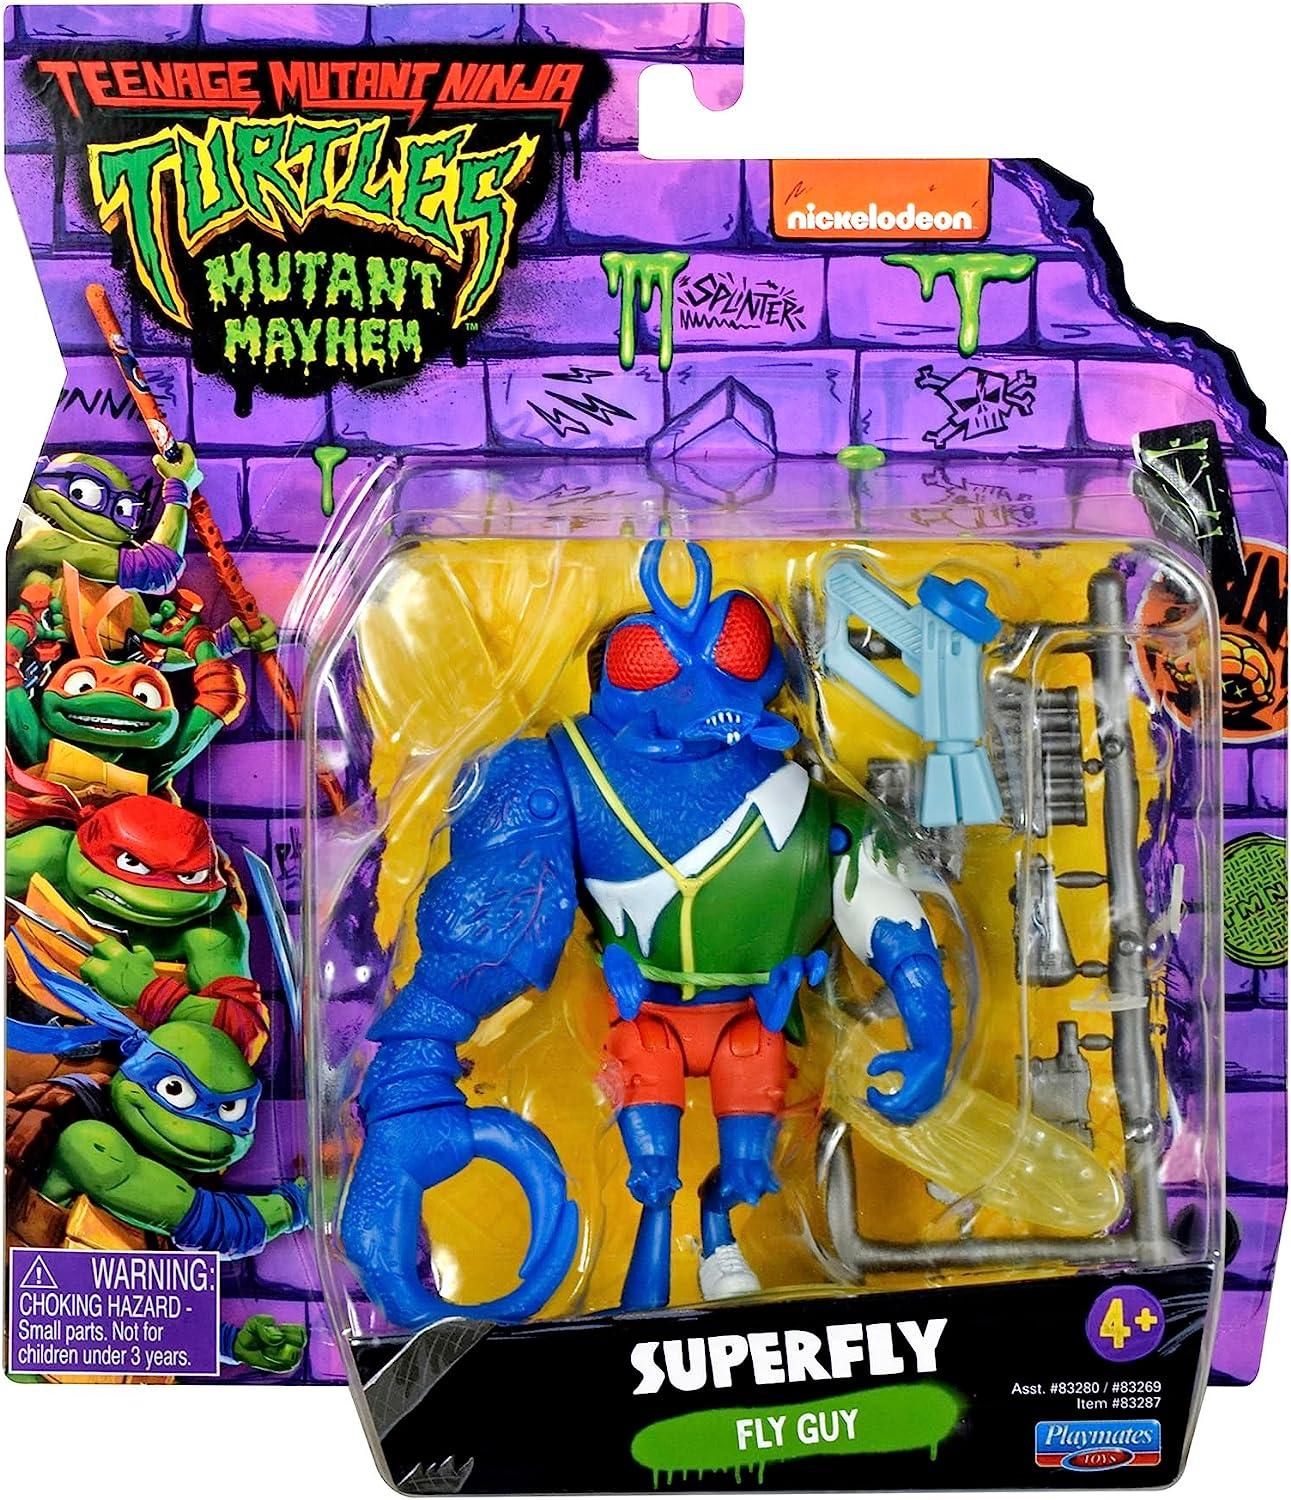 Teenage Mutant Ninja Turtles Mutant Mayhem SUPERFLY Action Figure